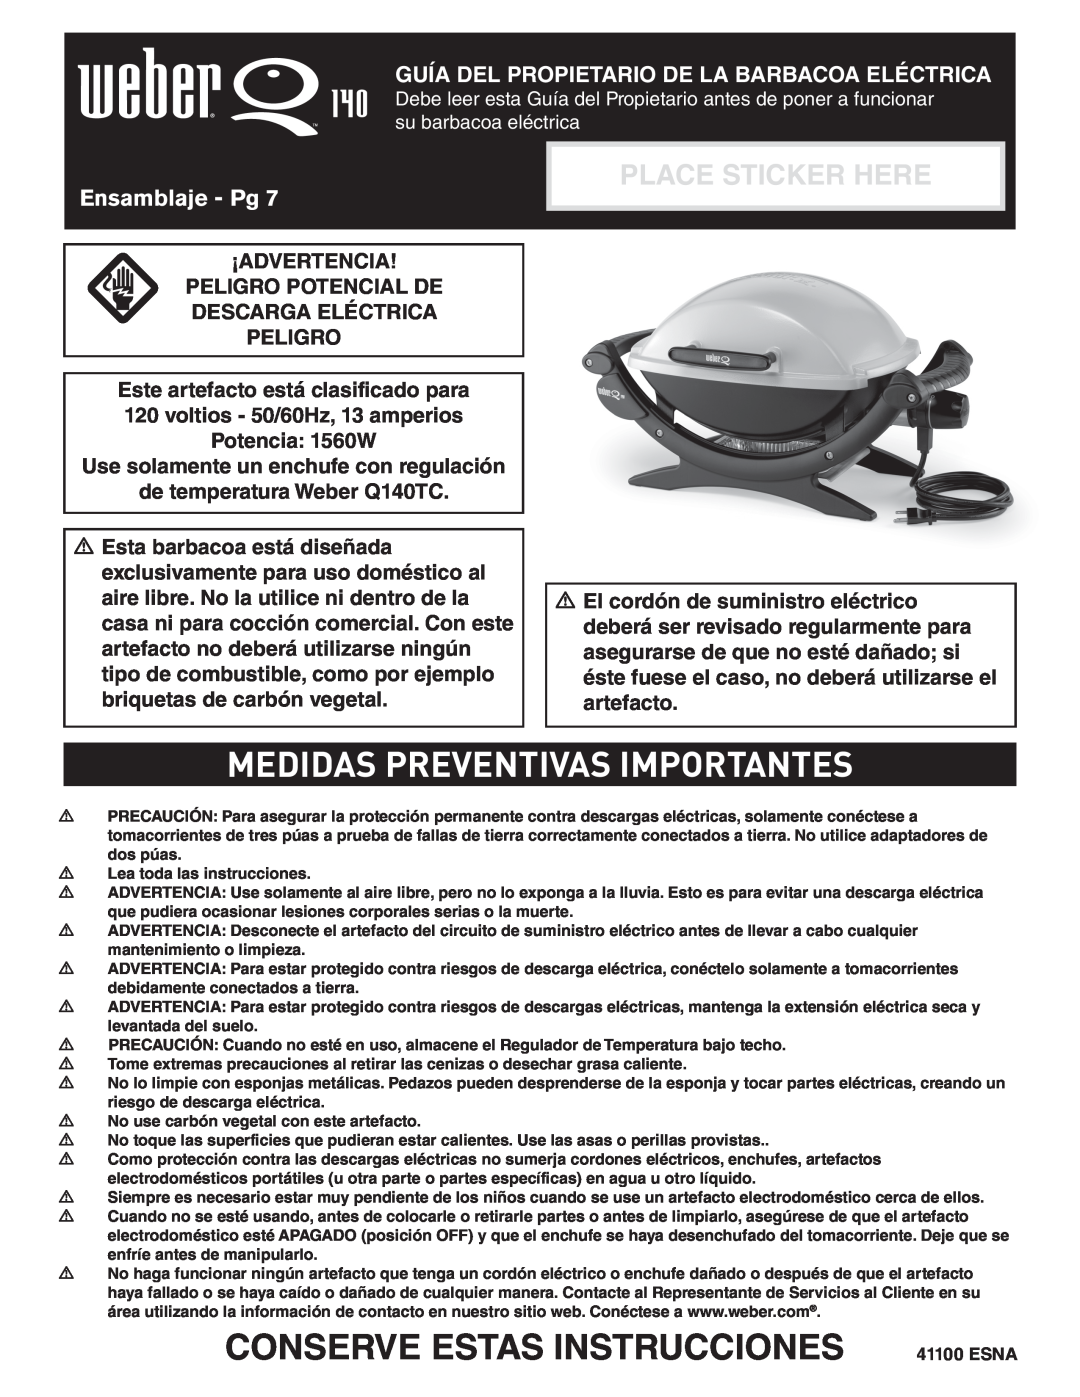 Weber Q 140 Medidas Preventivas Importantes, Conserve Estas Instrucciones, Guía Del Propietario De La Barbacoa Eléctrica 